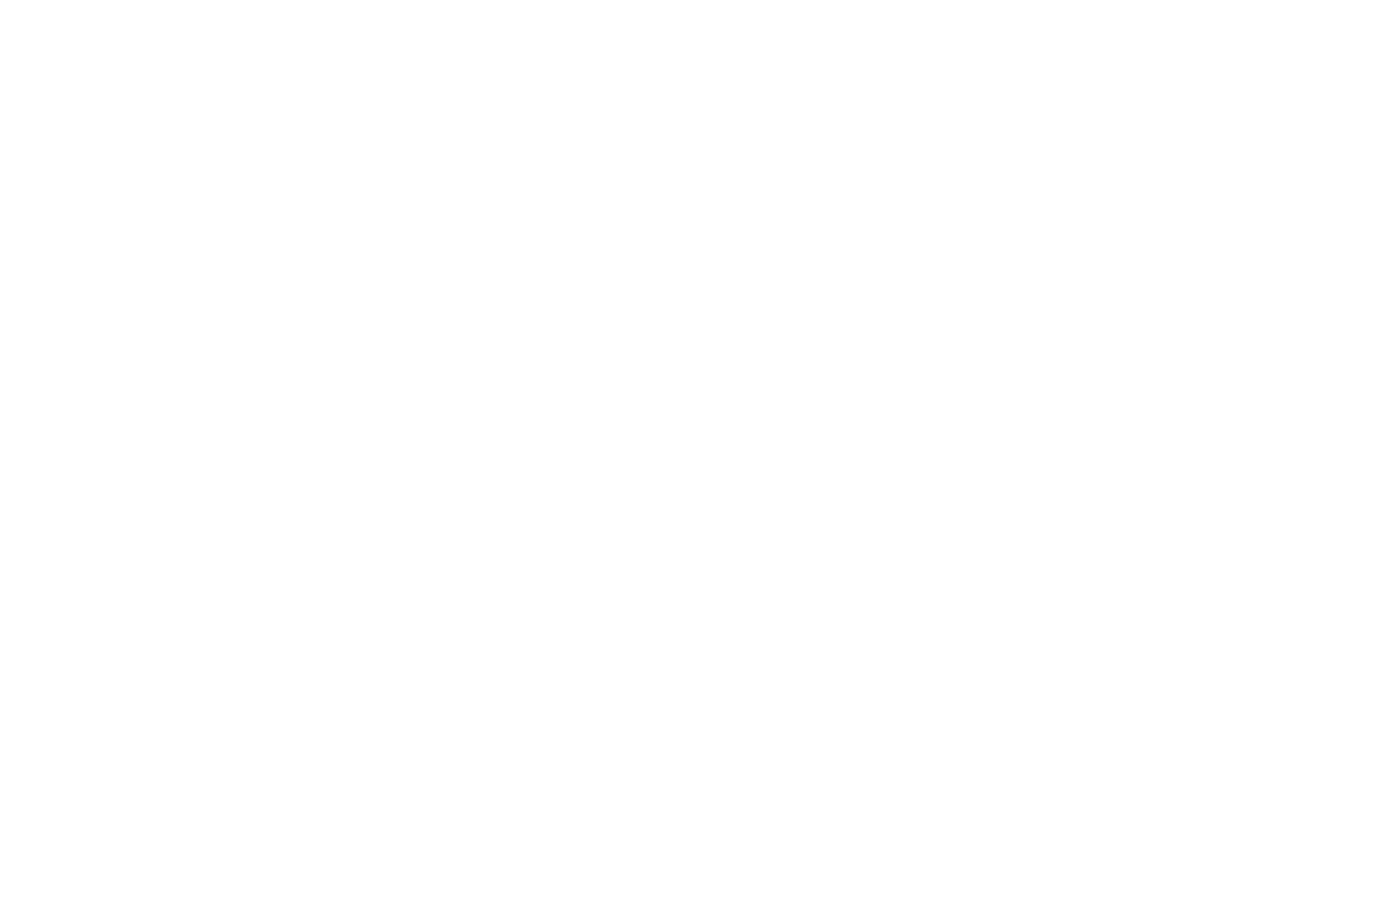 Jon Sierra Art